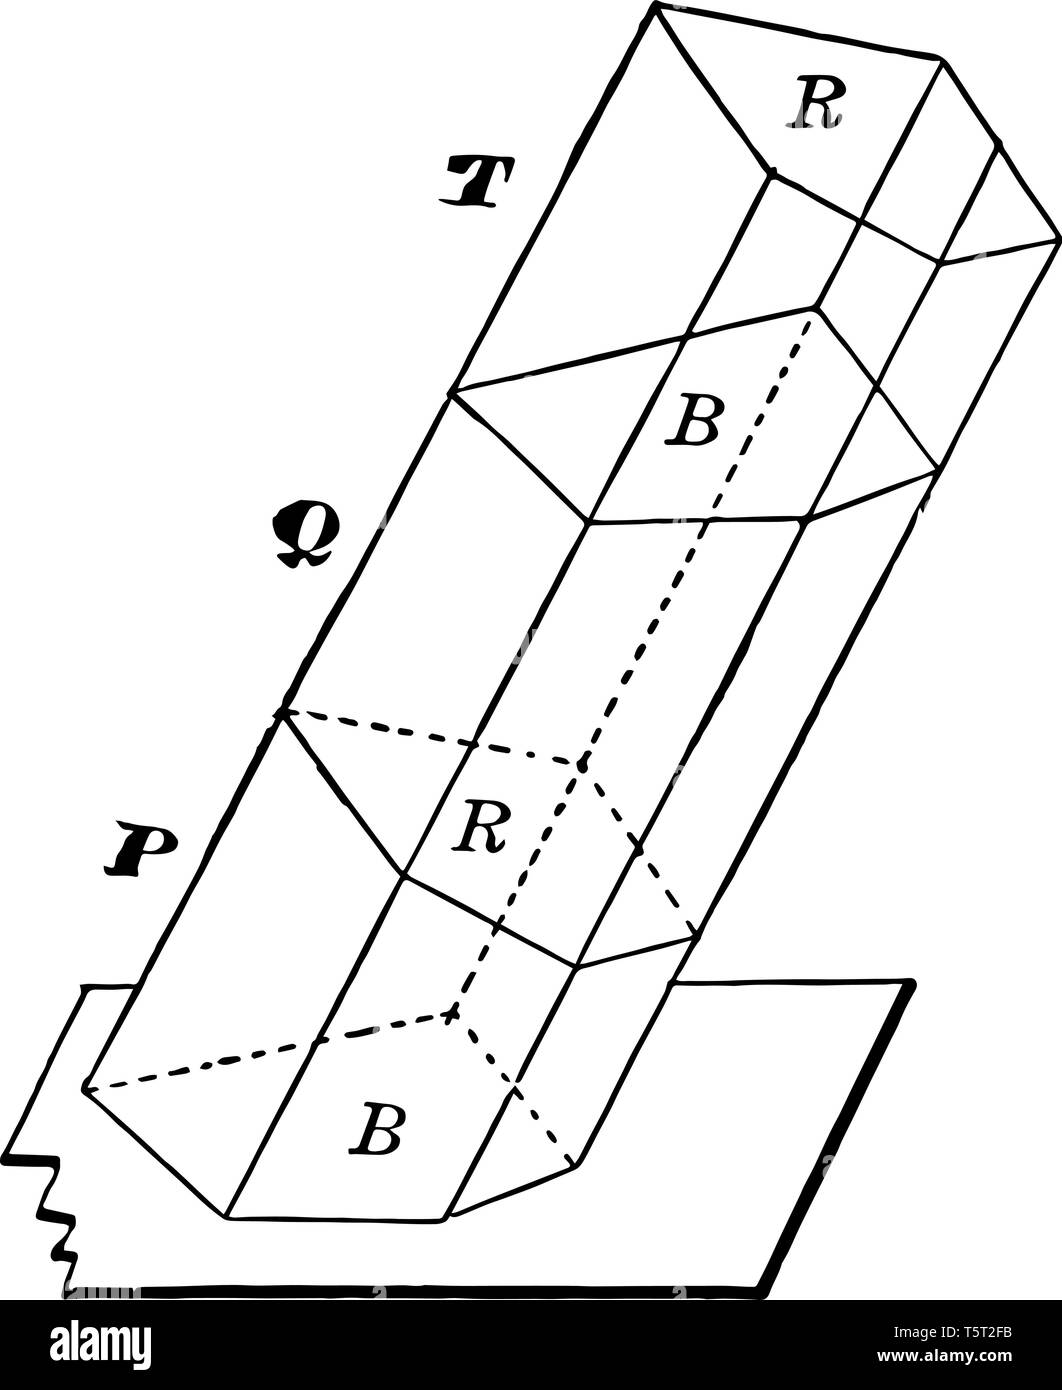 L'immagine mostra un prisma obliquo realizzato dalla combinazione di tre  tronchi di prismi. Si tratta di un prisma con basi che non sono allineati  uno direttamente Immagine e Vettoriale - Alamy